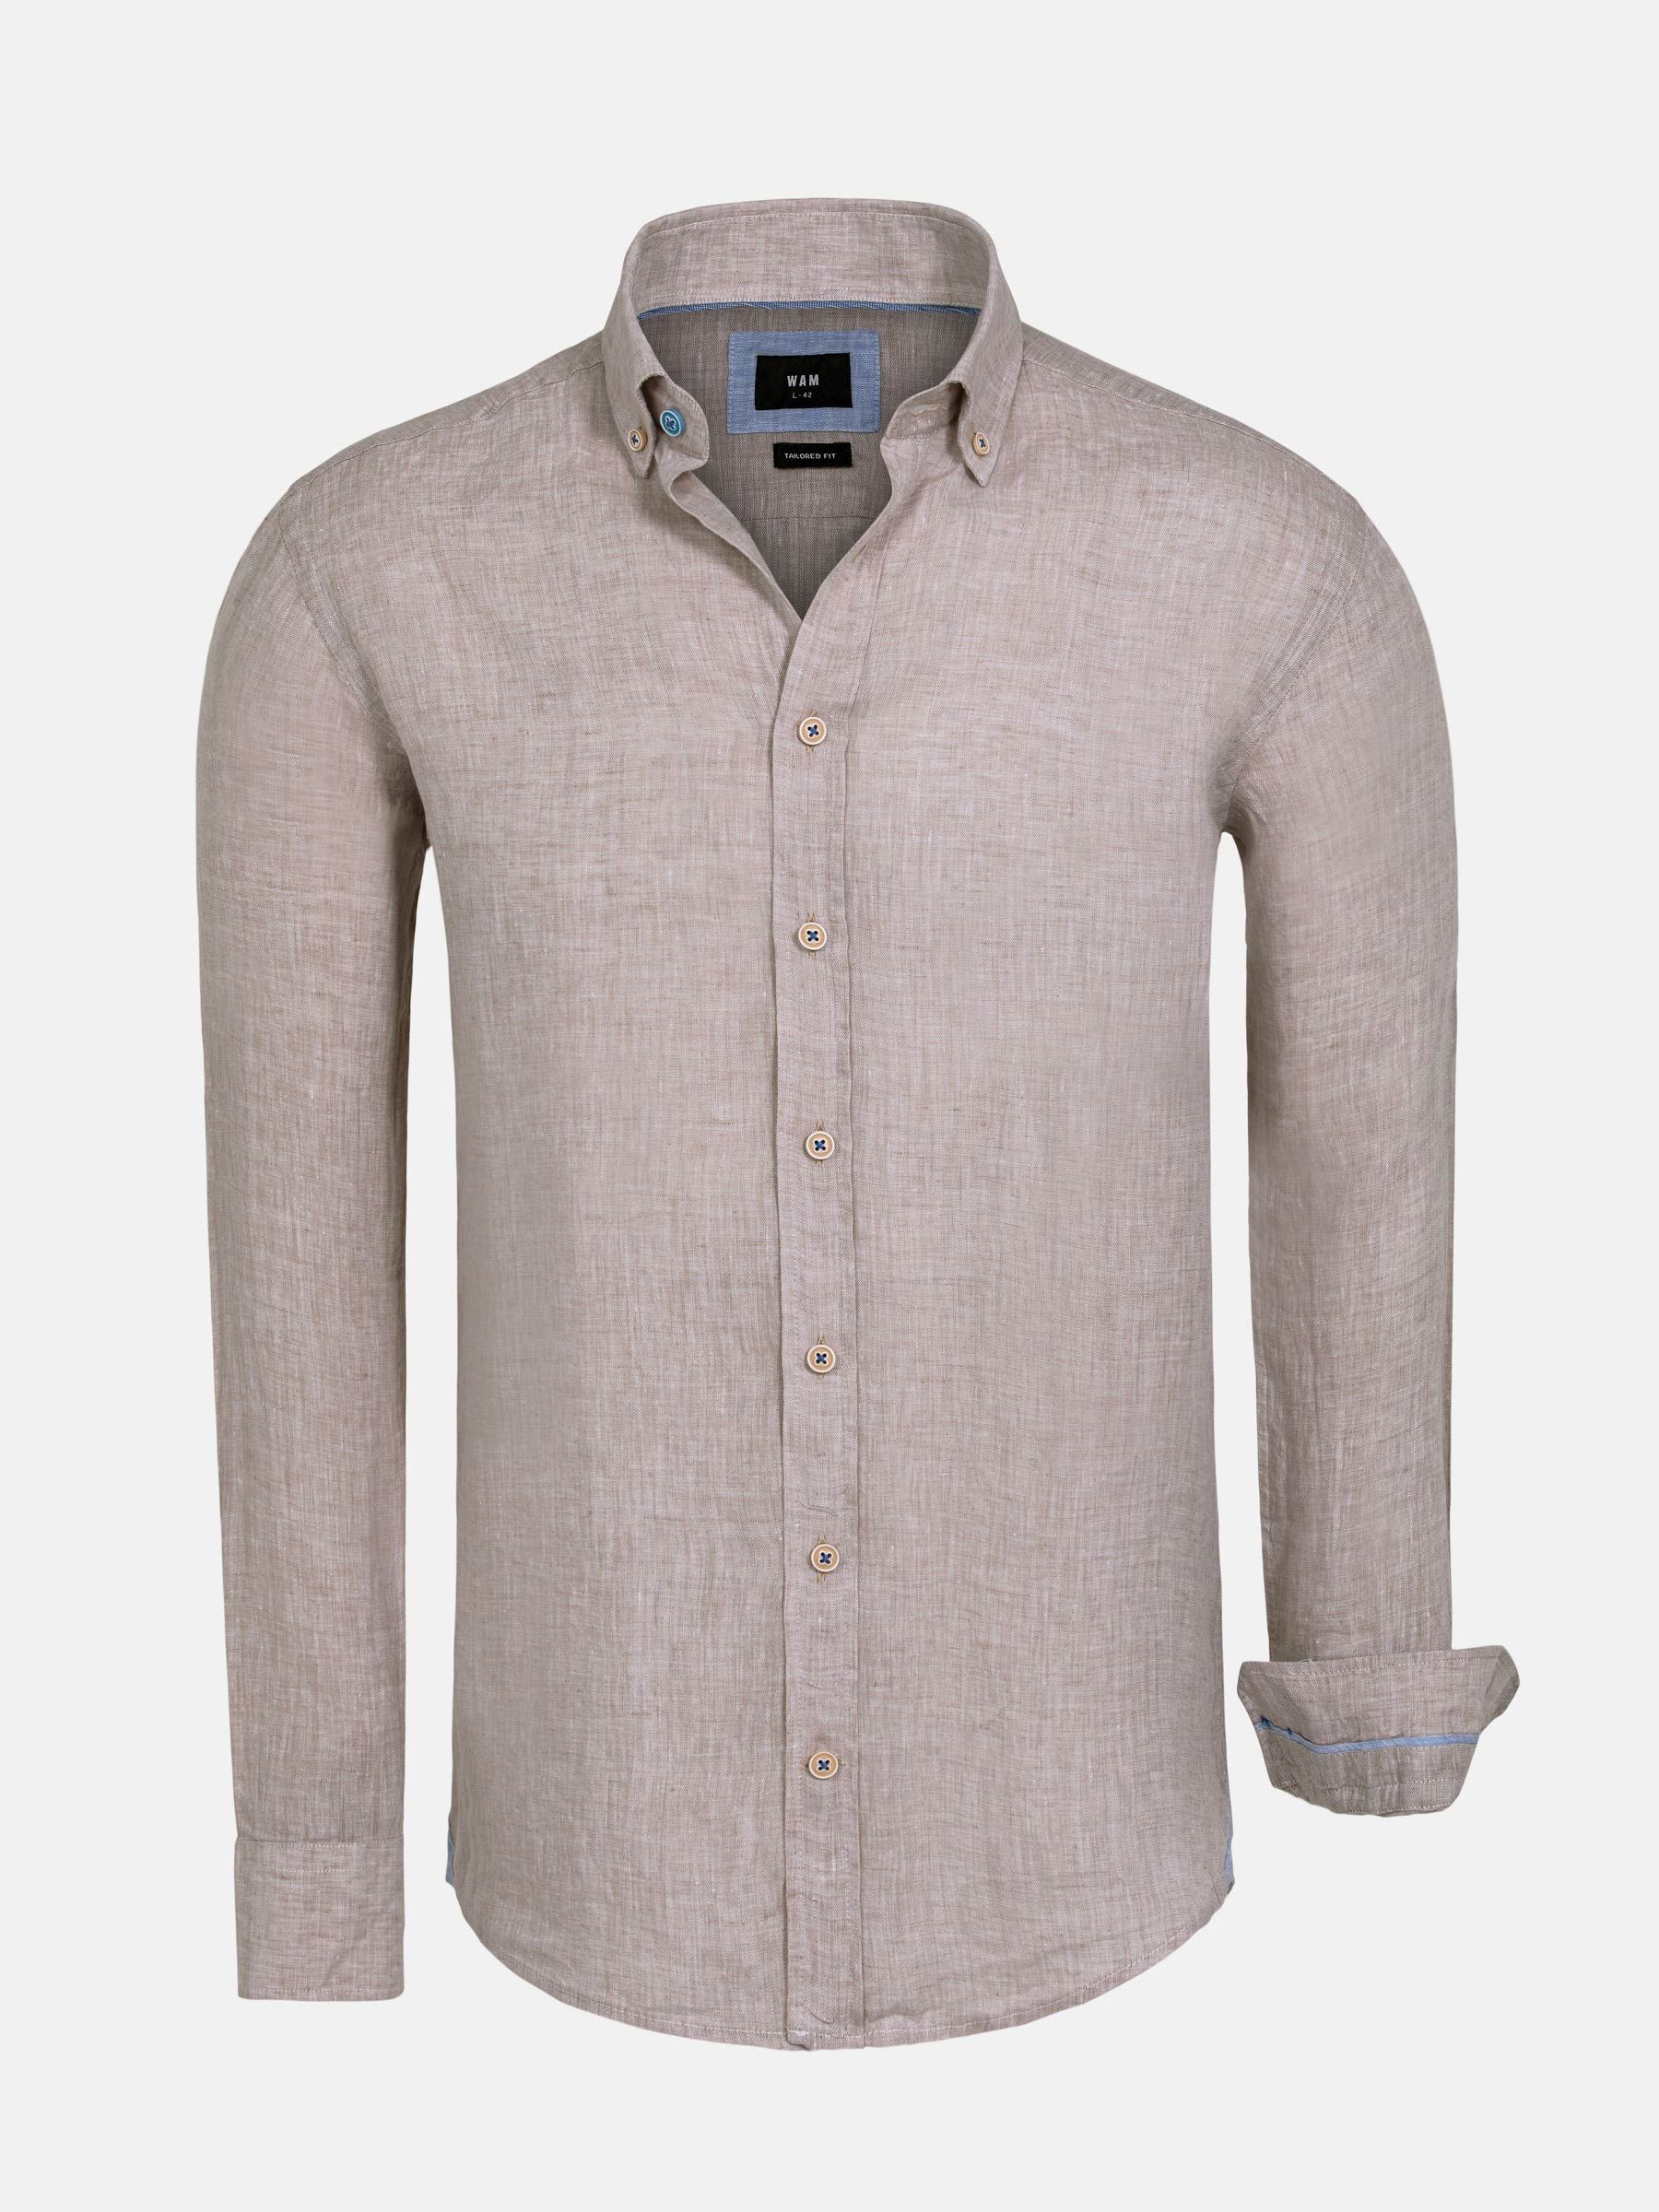 ding Historicus BES Men's linen shirt | Tailored fit linen shirt | Men's shirt | WAM DENIM